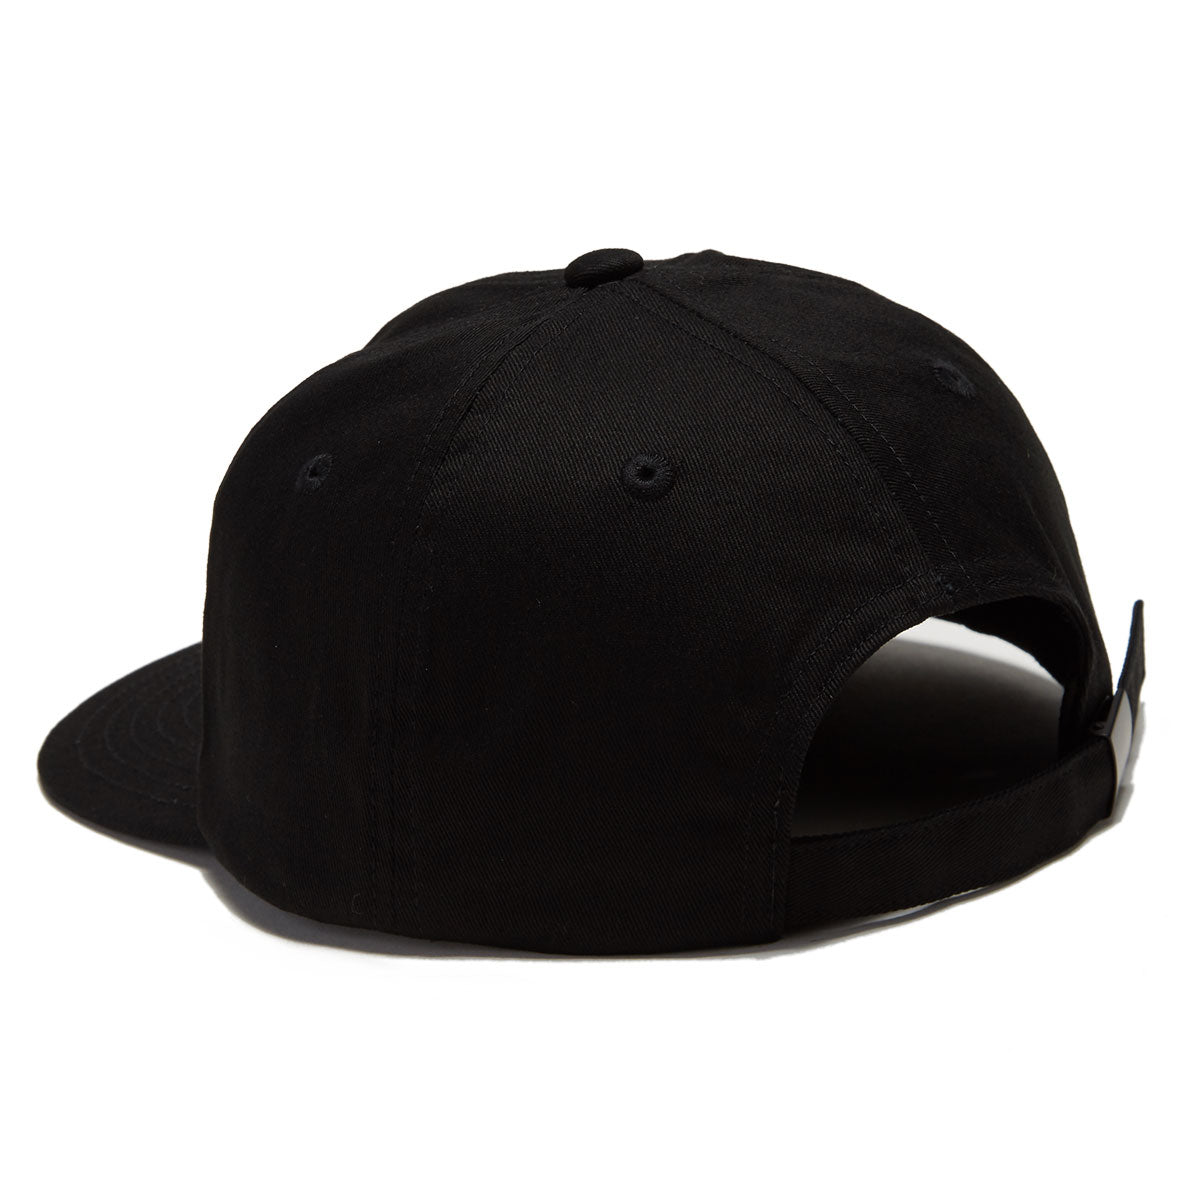 Zero Army Aplique Hat - Black image 2